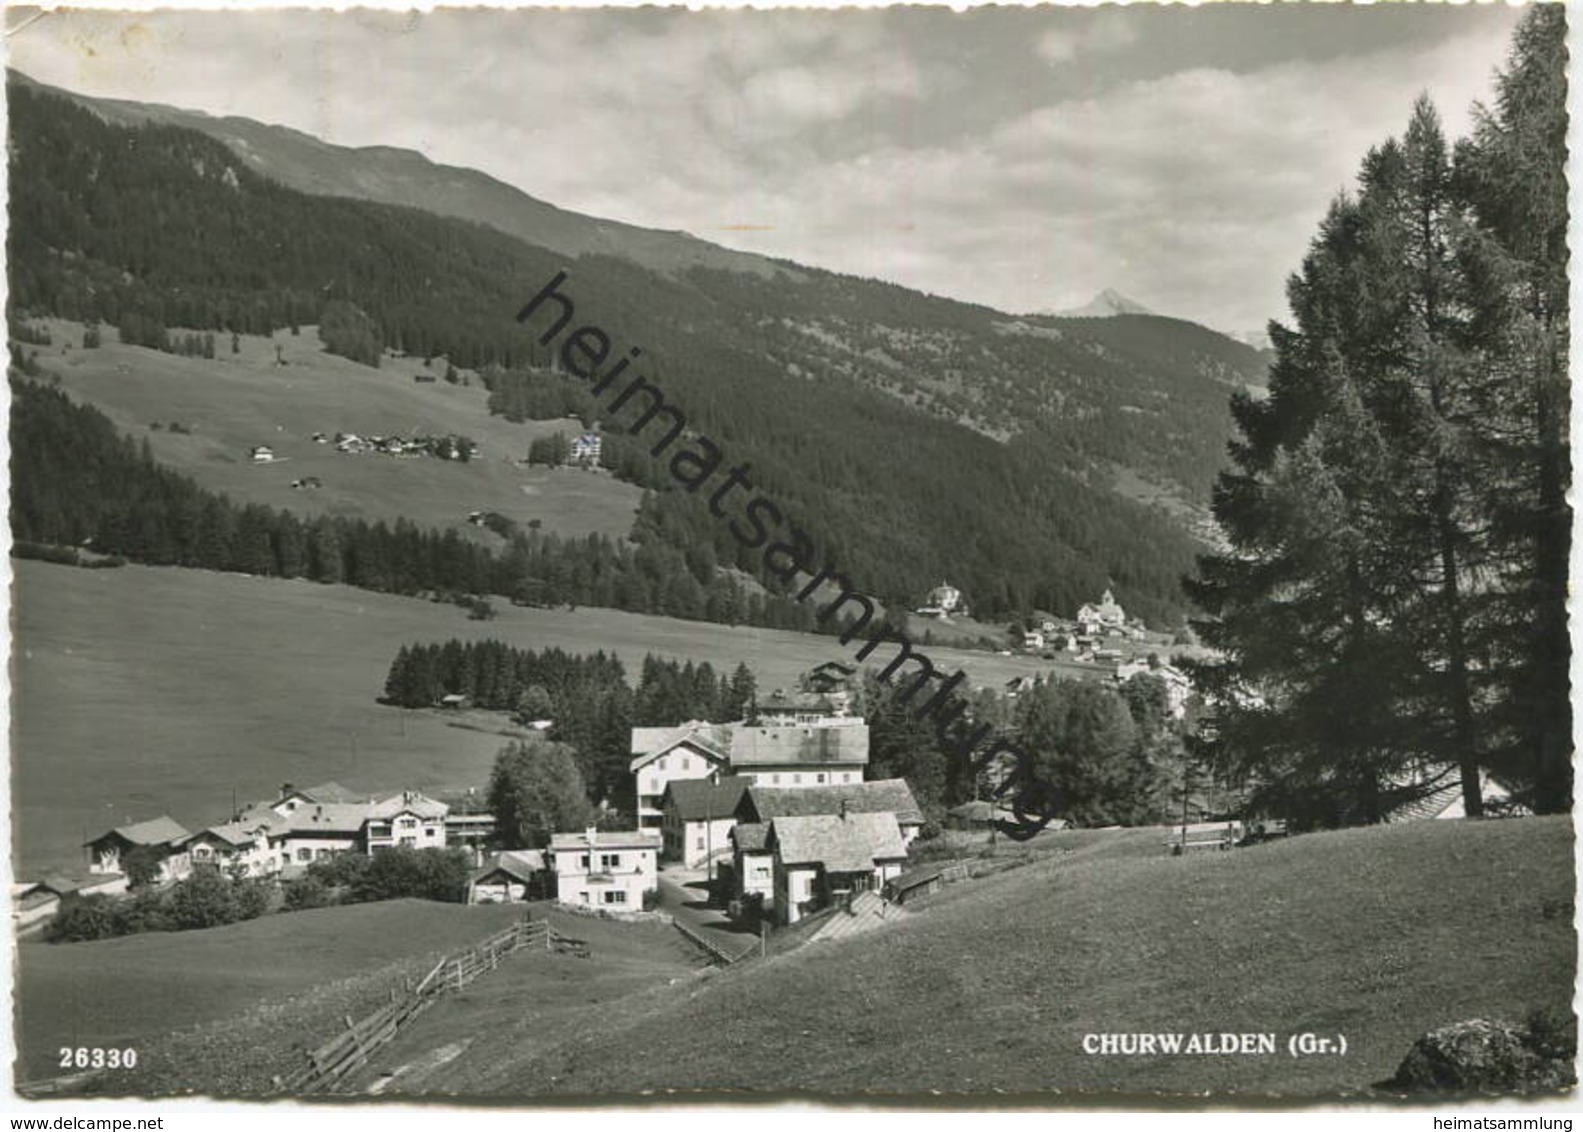 Churwalden - Foto-AK Grossformat - Verlag Foto-Gross St. Gallen - Gel. 1951 - Churwalden